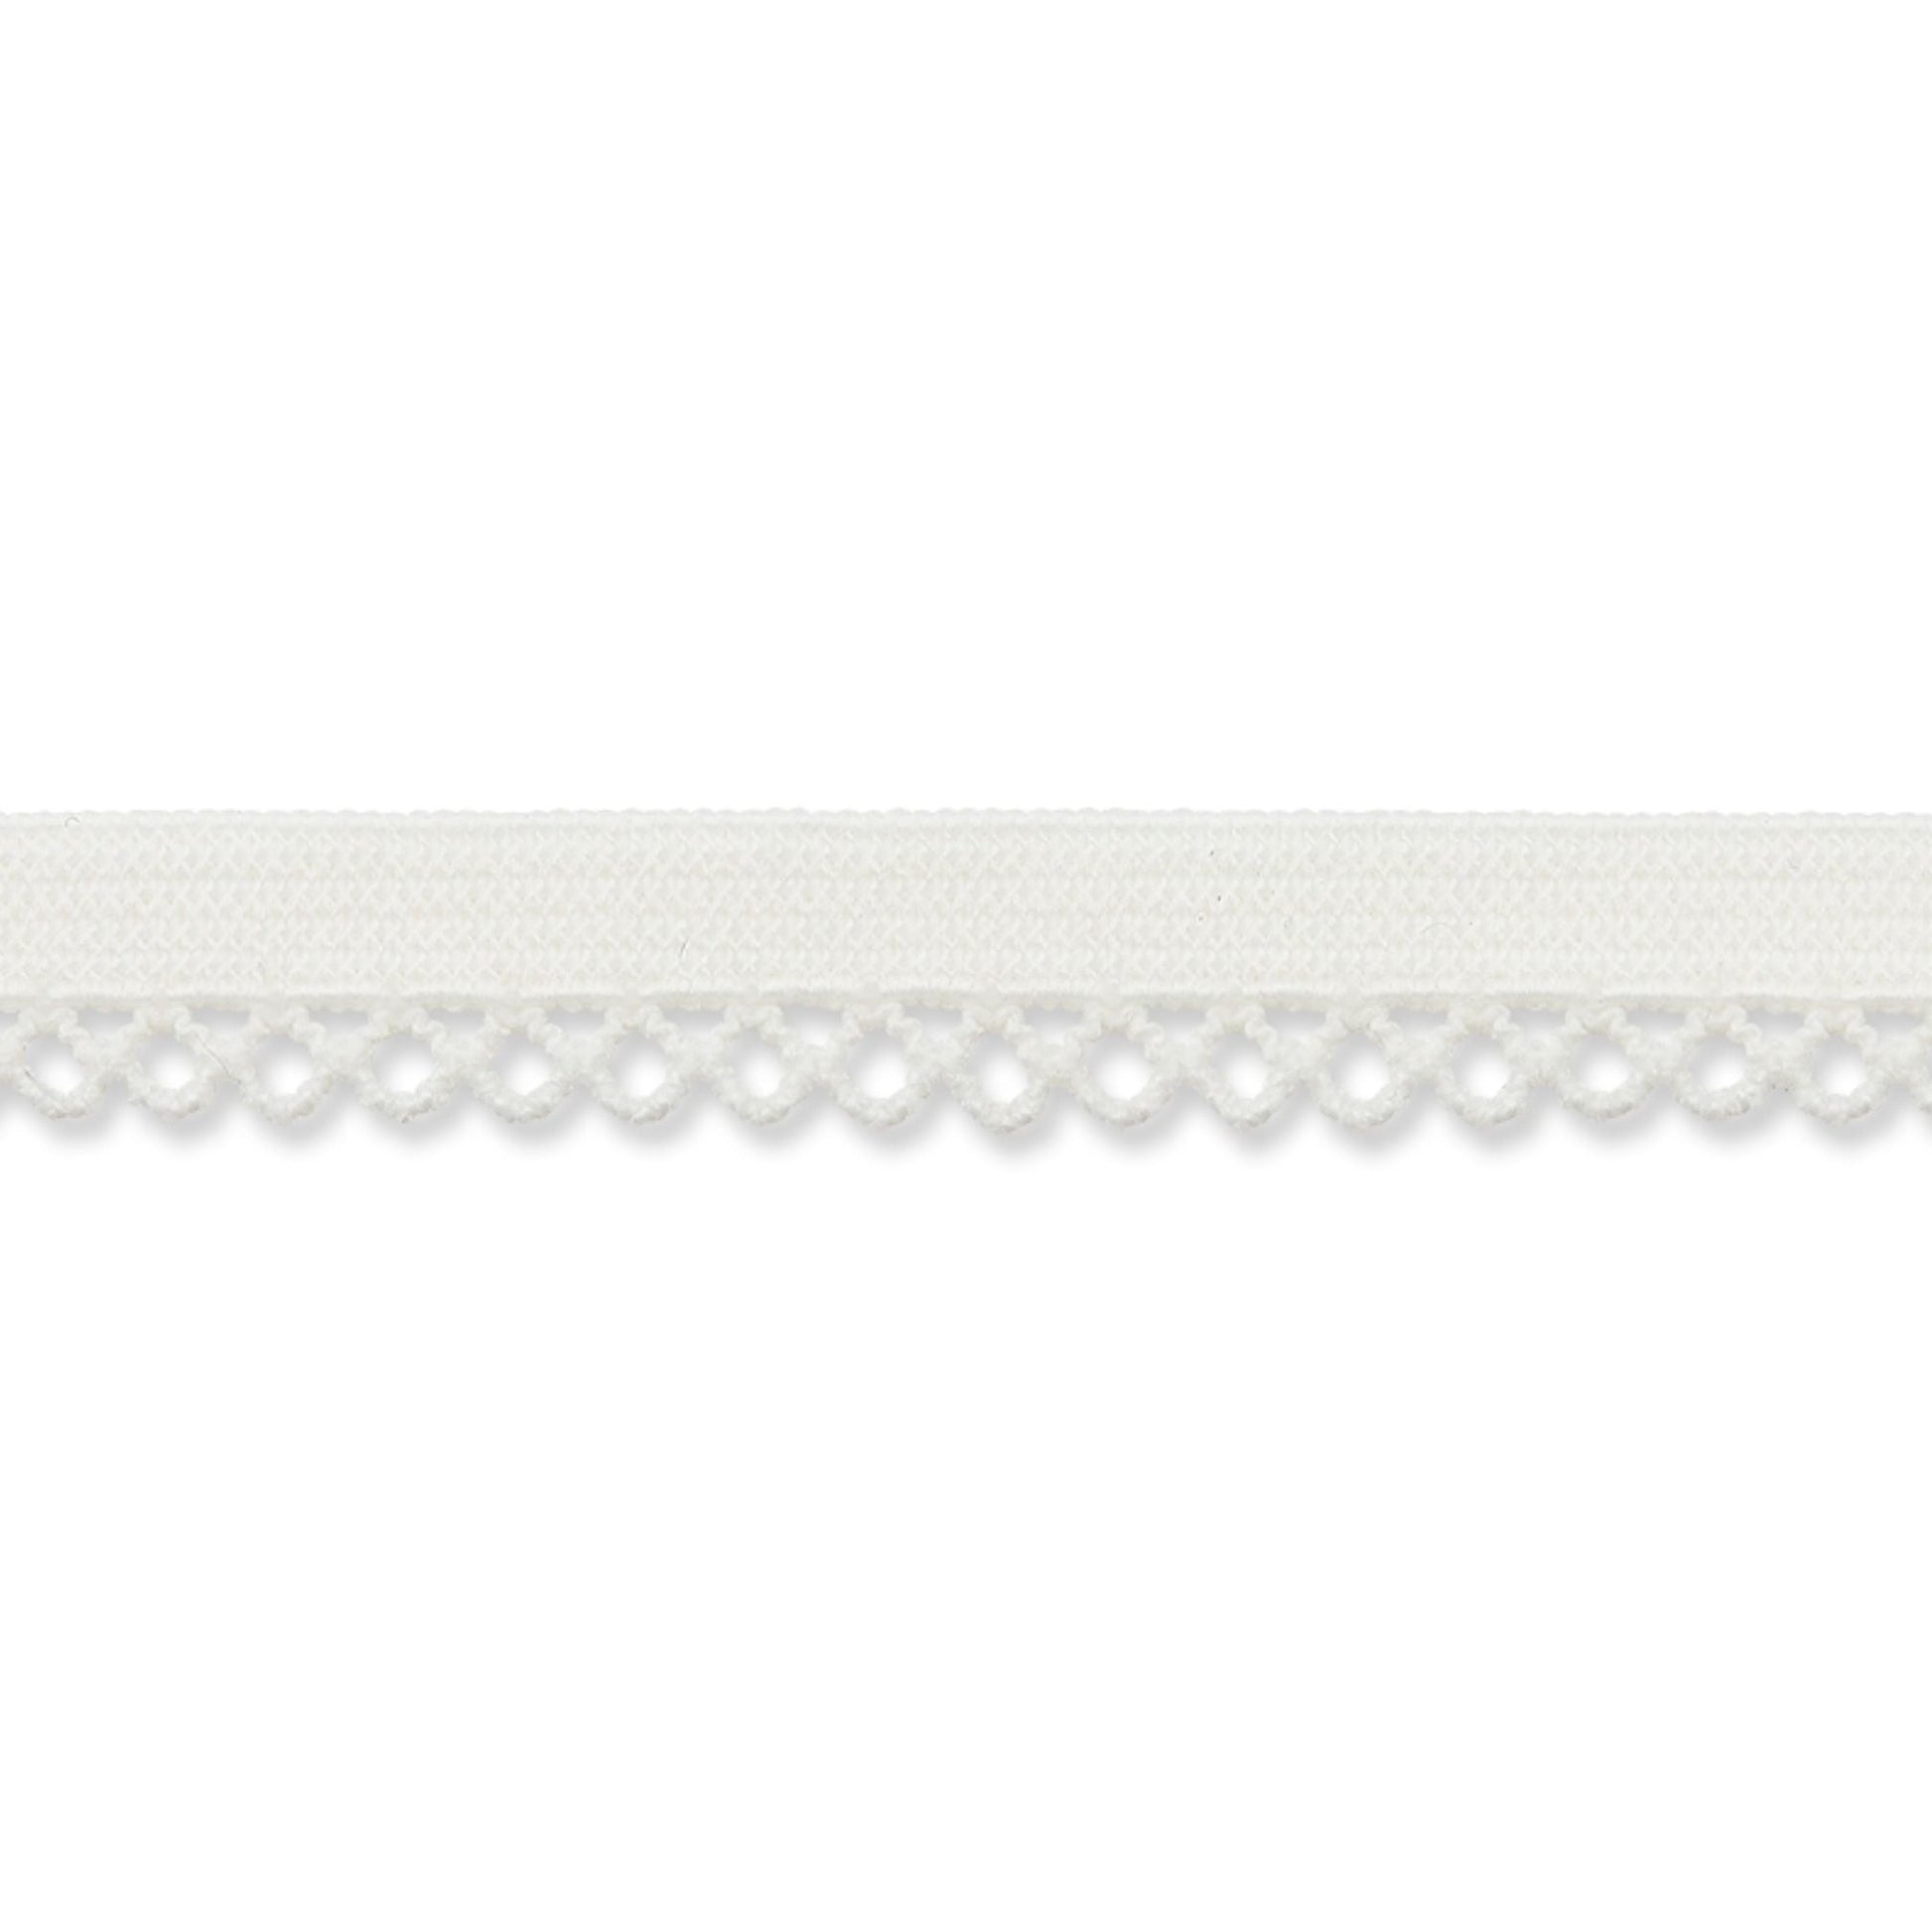 9 mm Ziergummi mit Spitze weiß